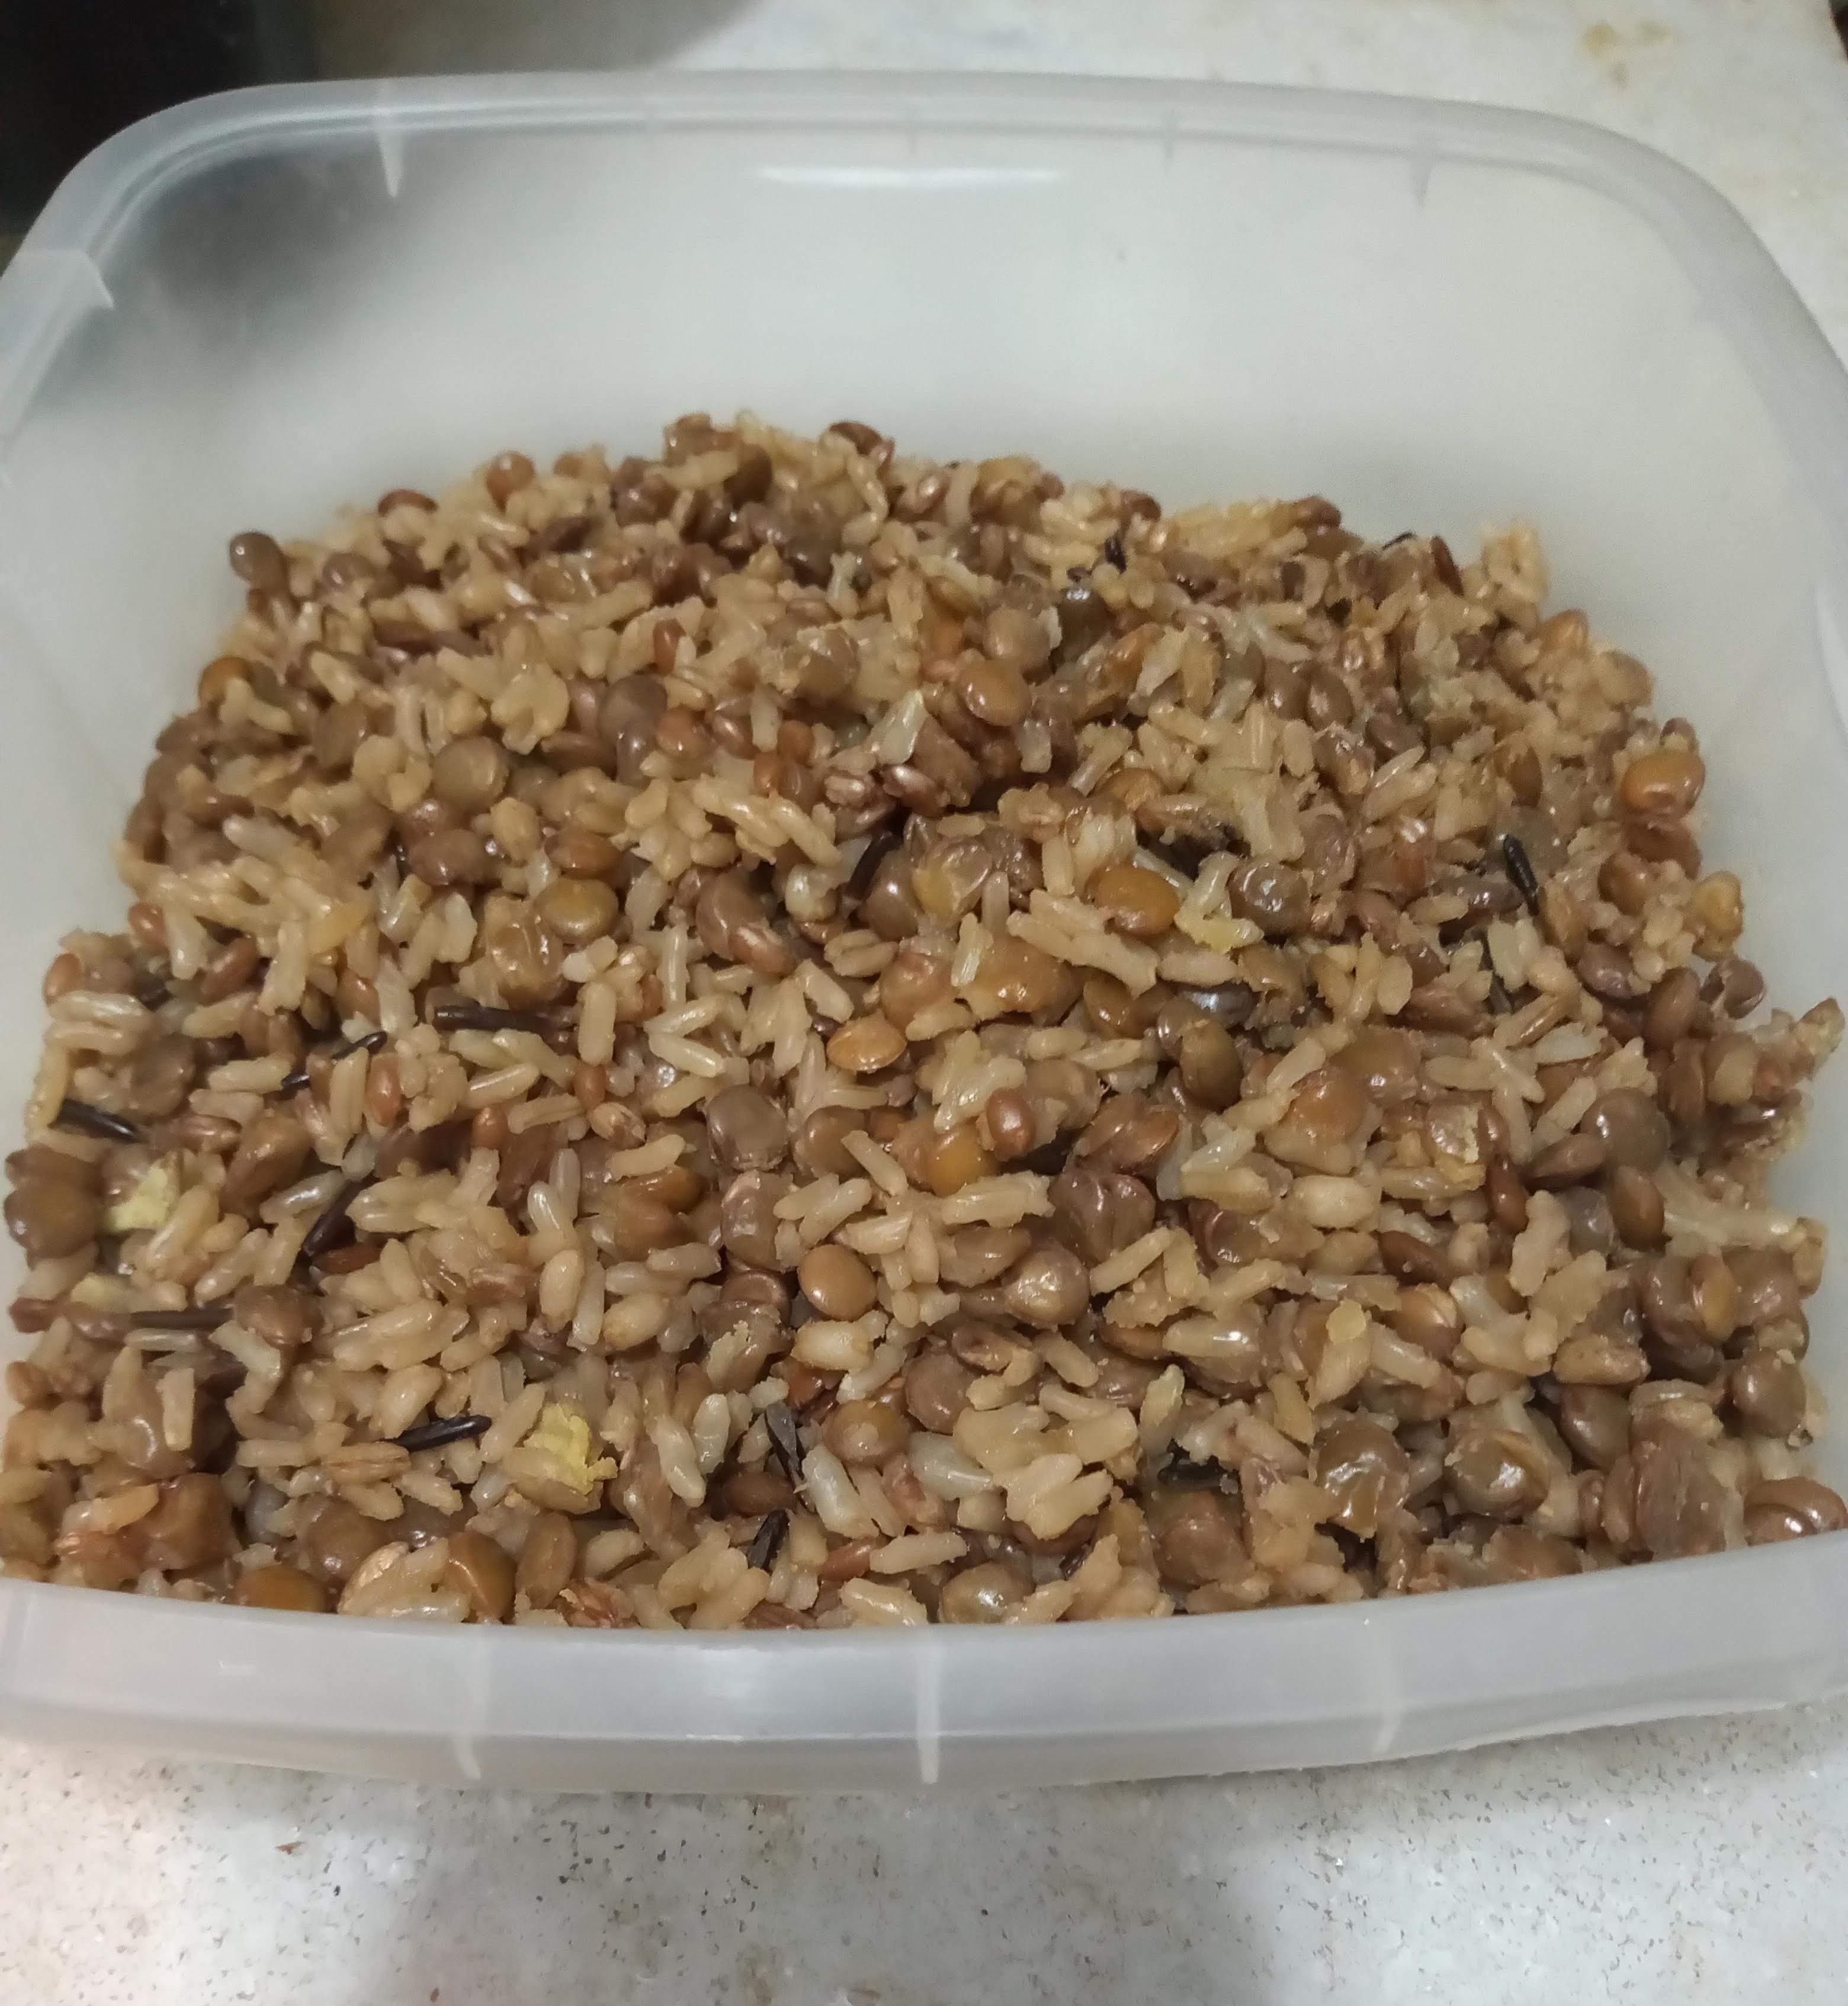 Mjadra de arroz 7 cereais na panela de pressão elétrica